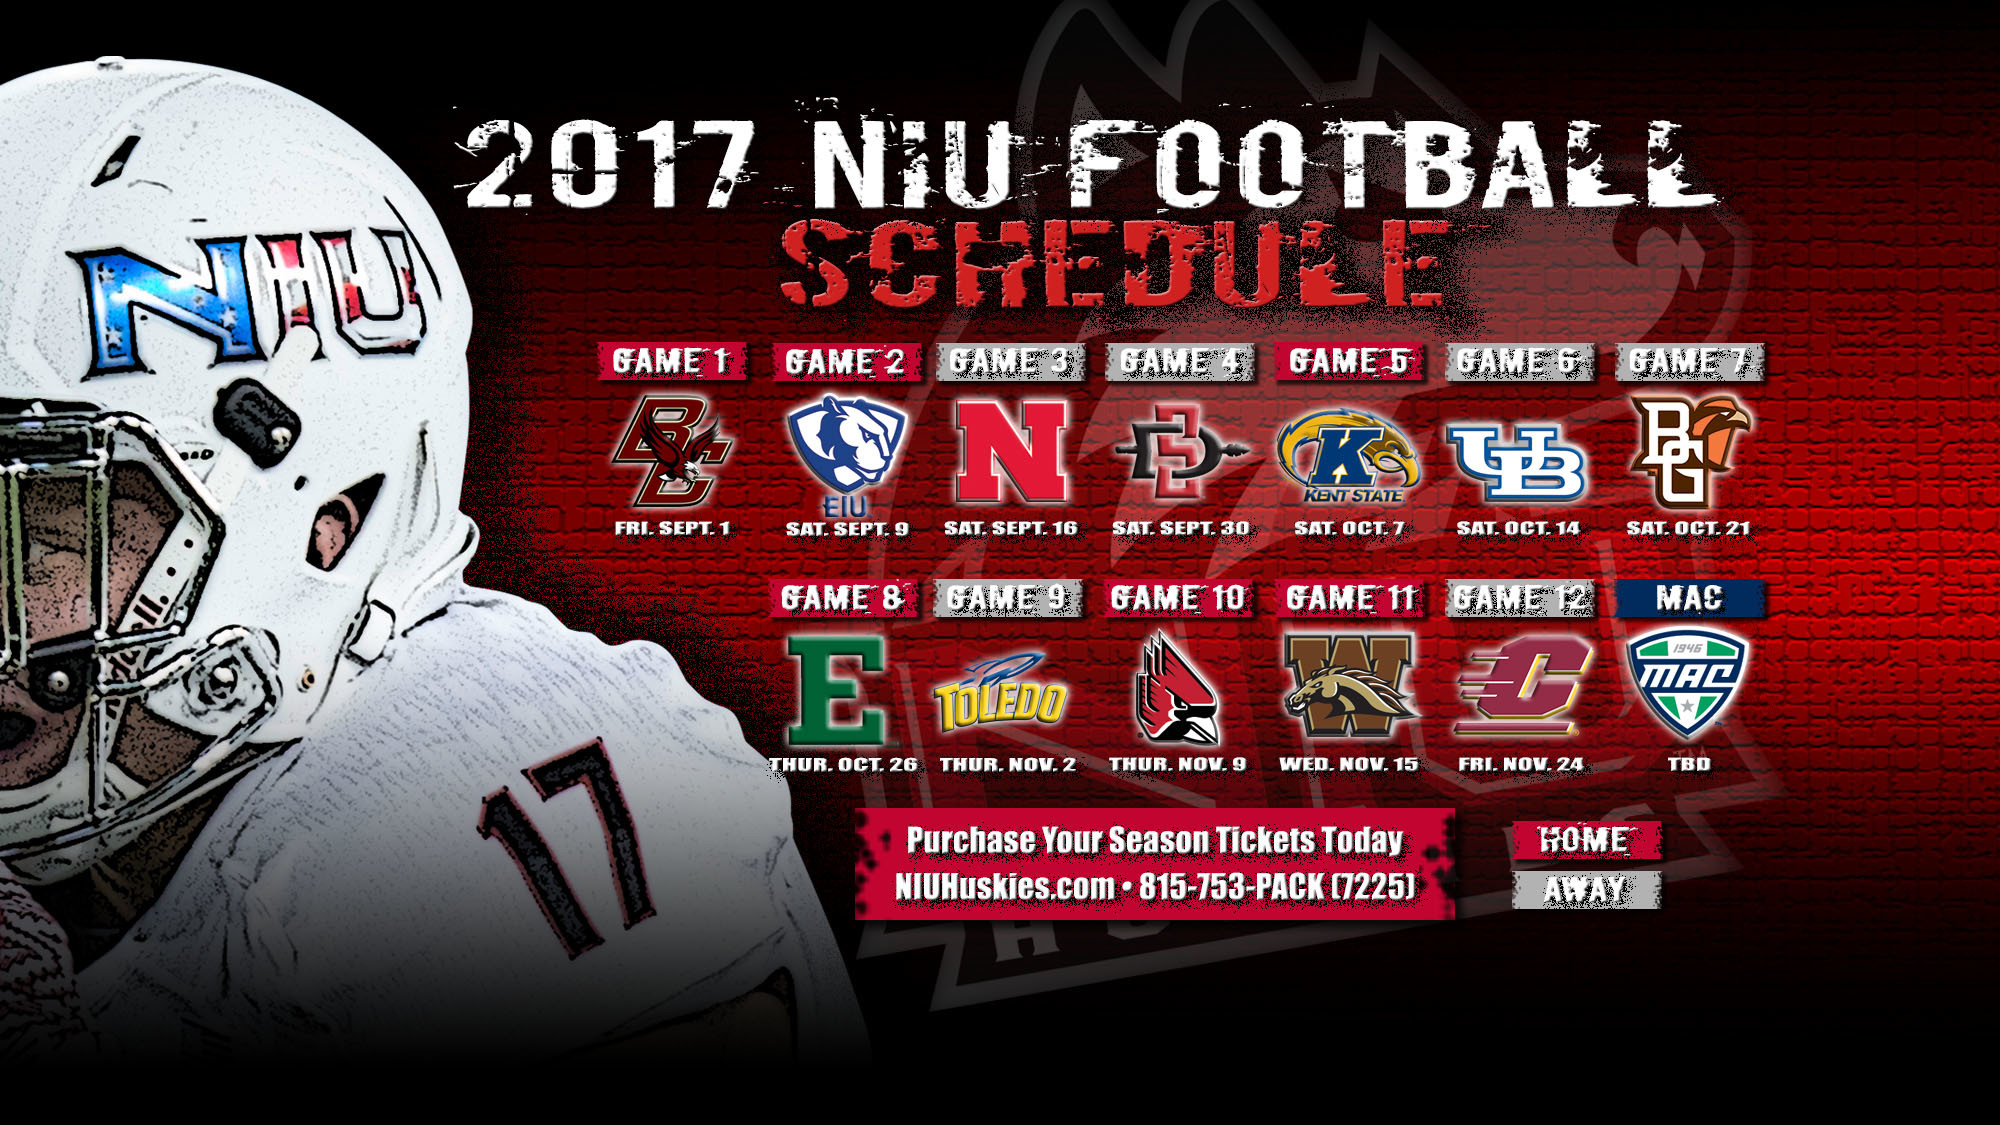 Niu Football 2017 Schedule Announced Data Src Hd 2017 Nebraska